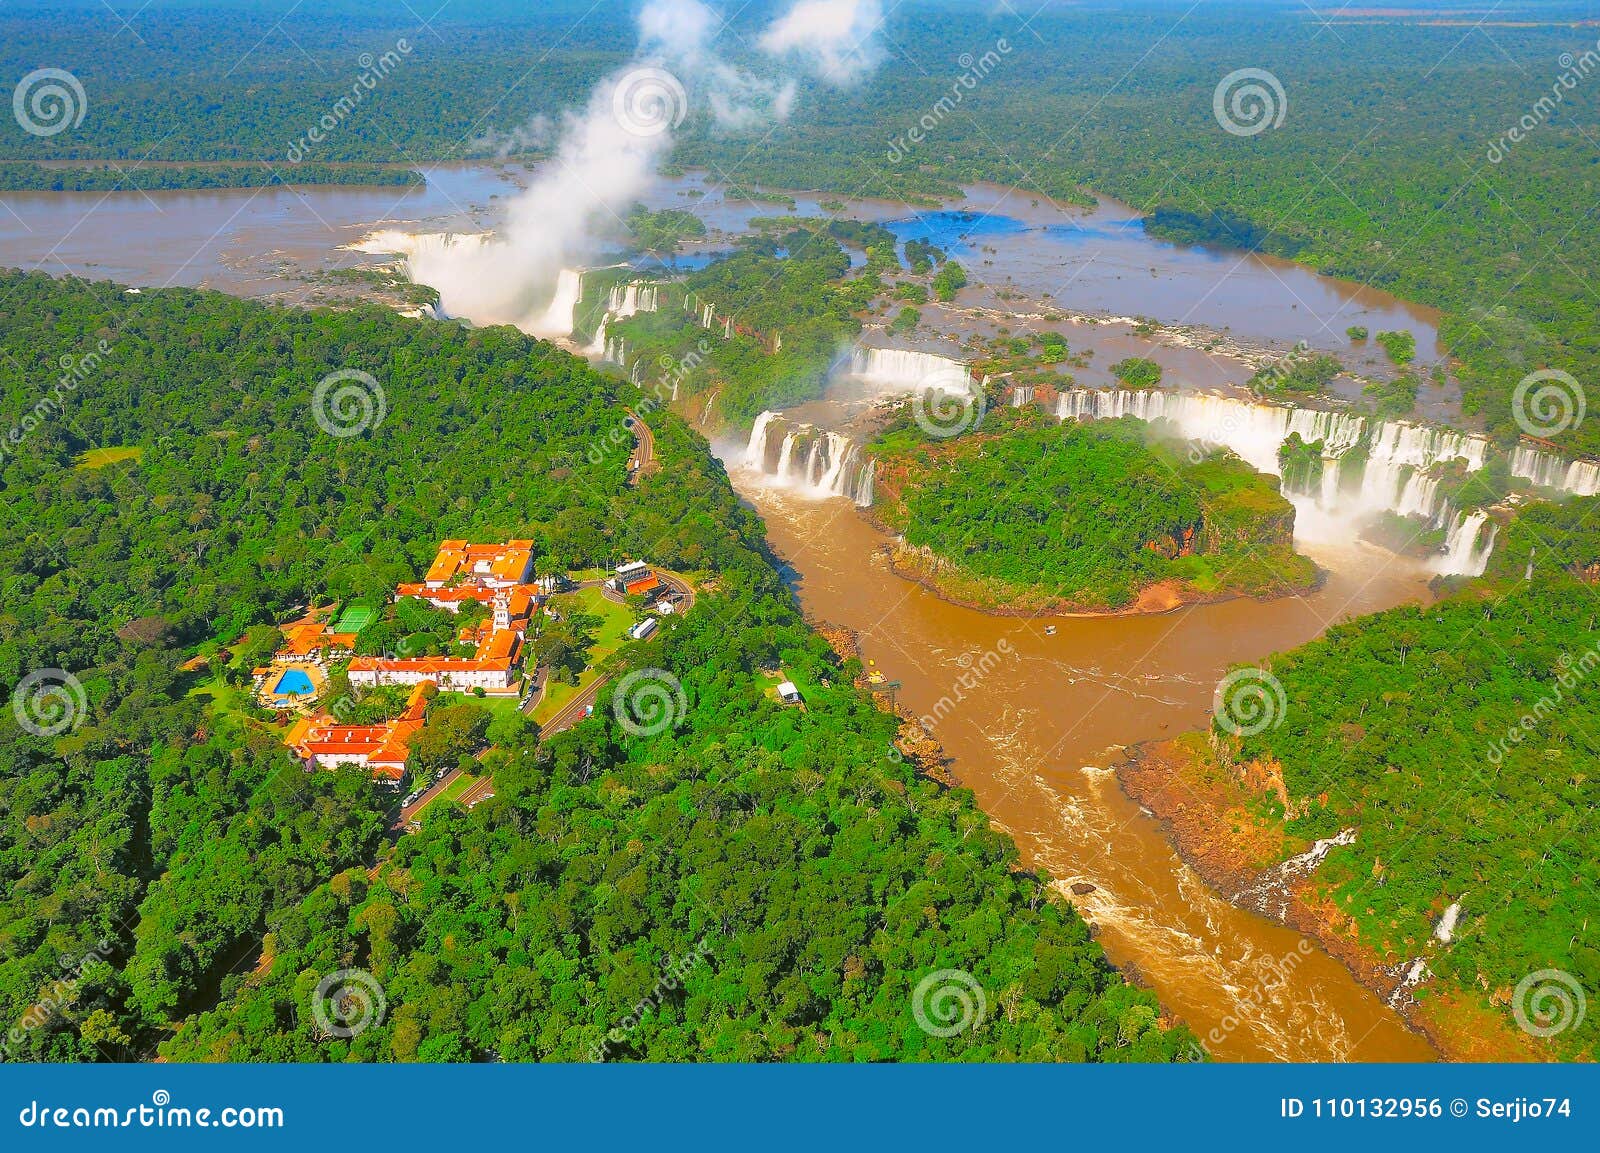 aerial view of iguazu falls.